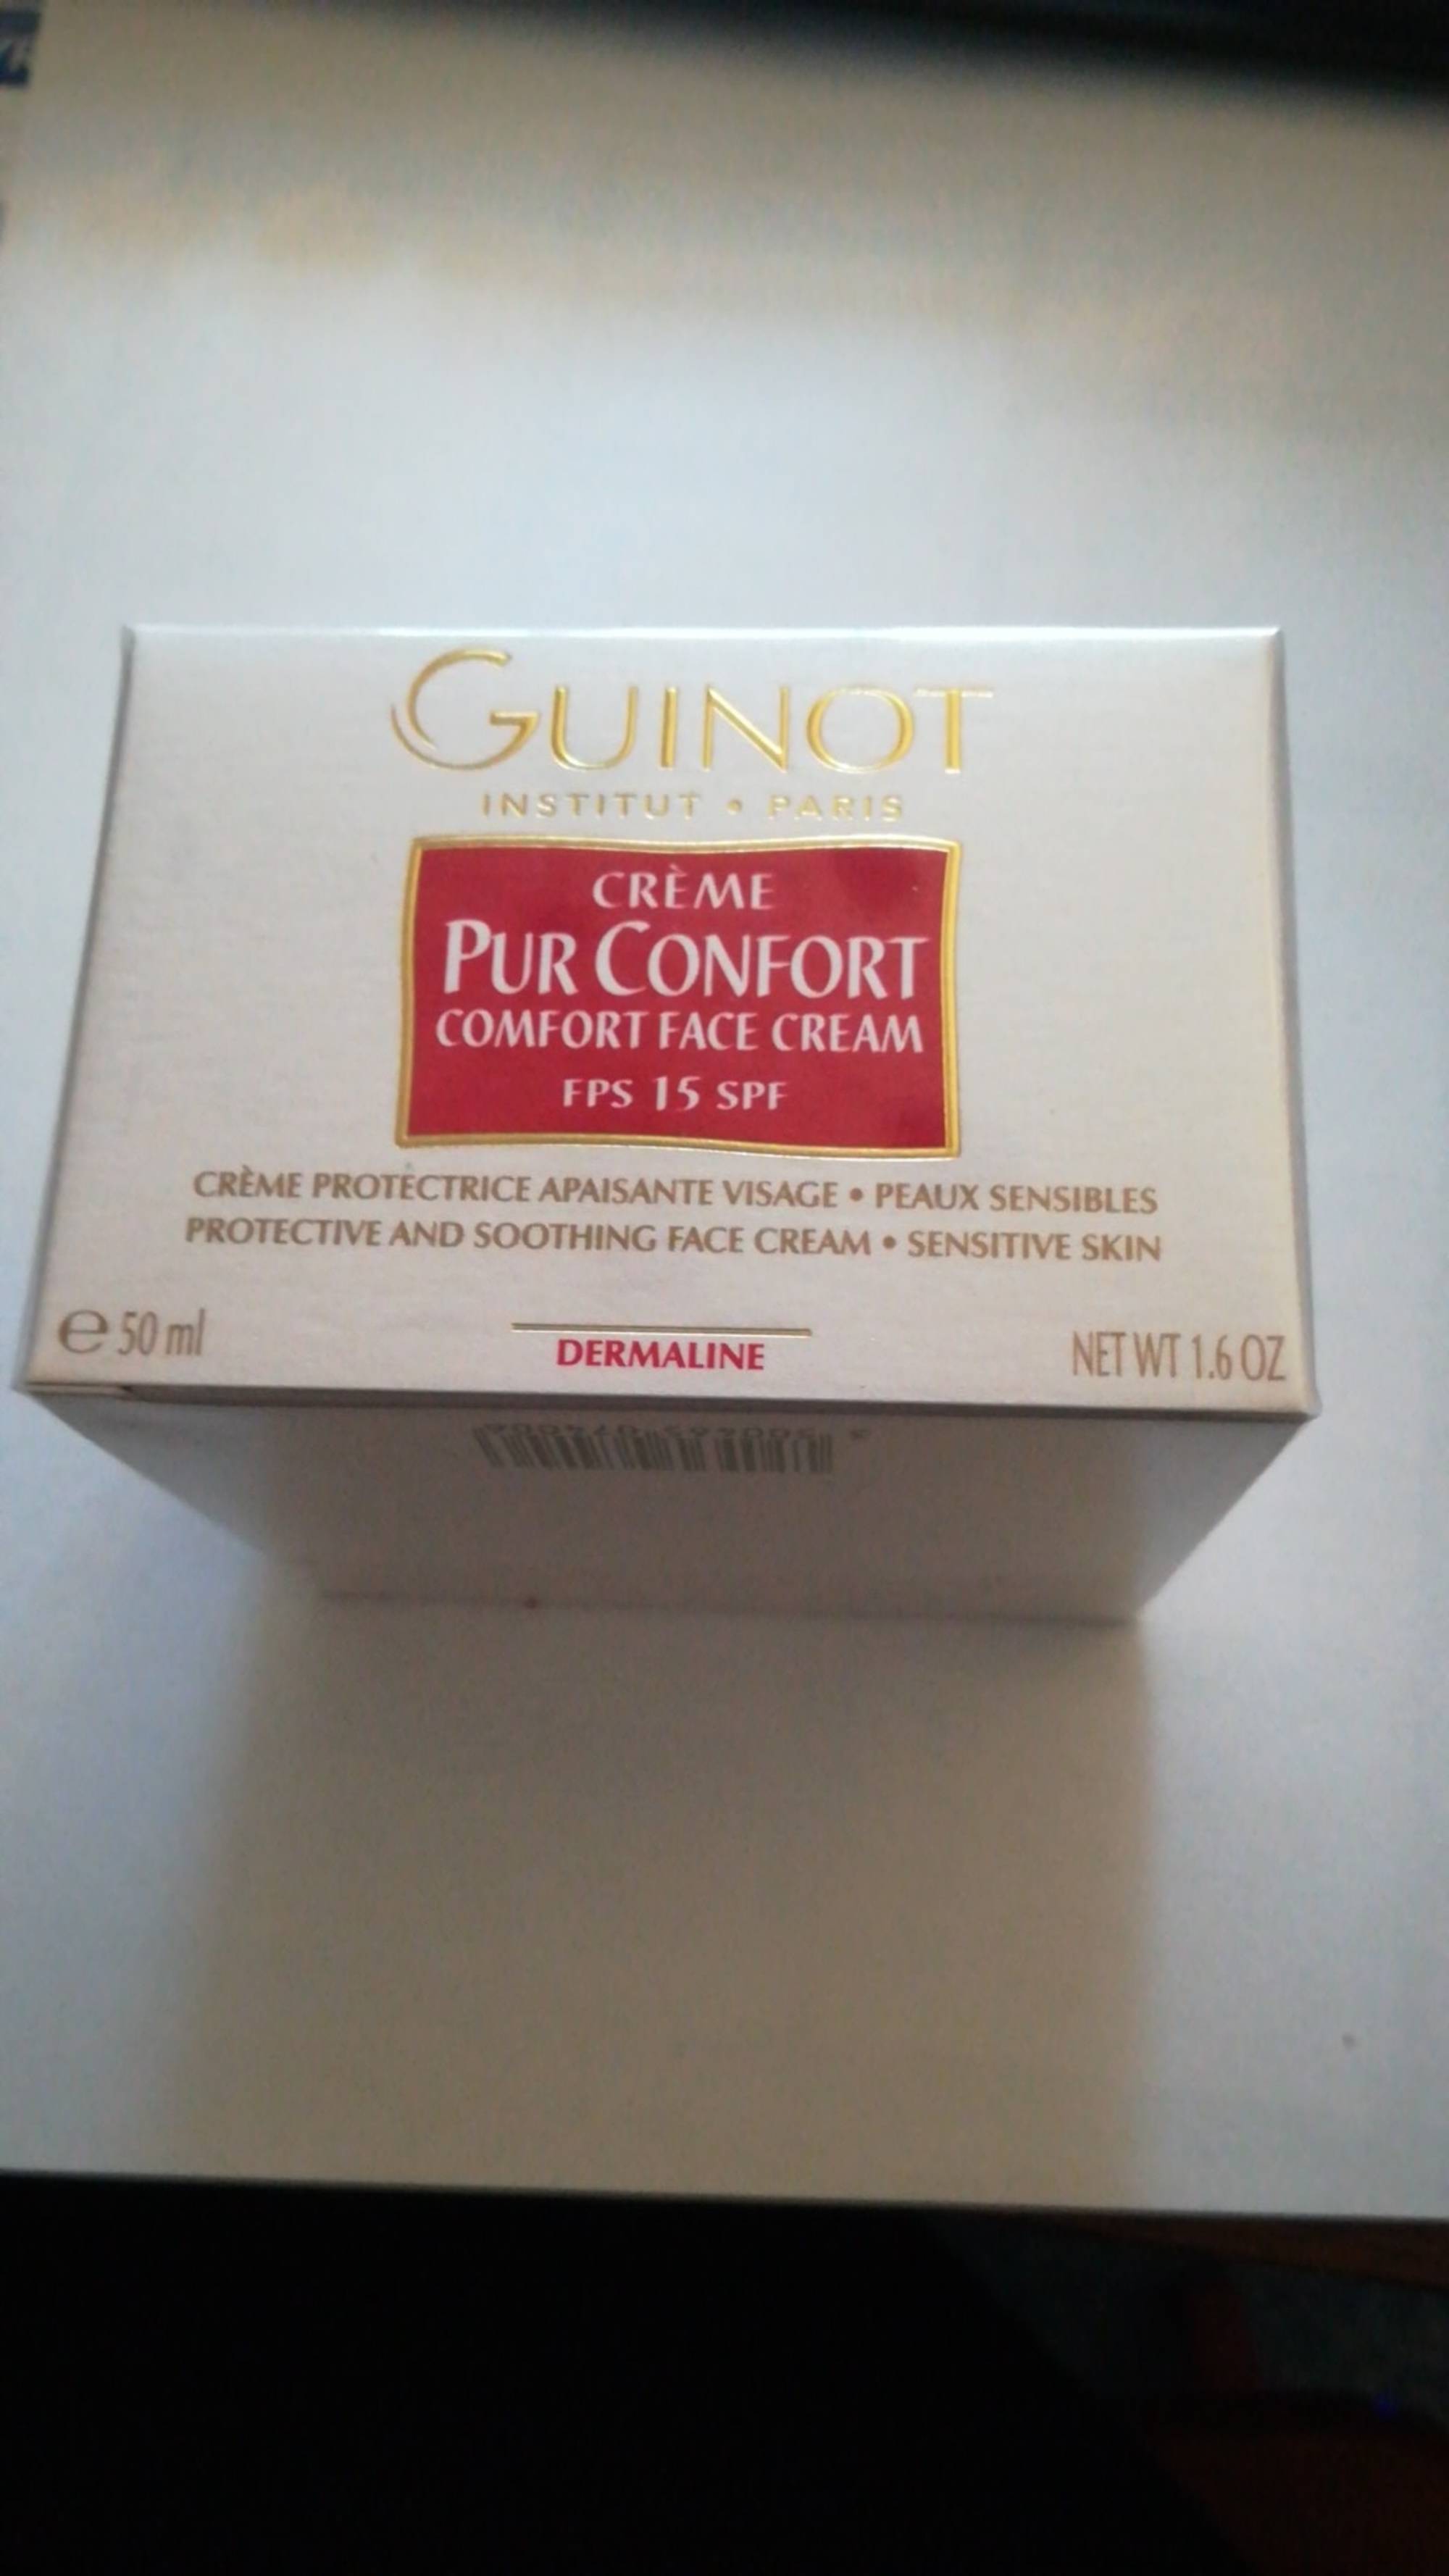 GUINOT - Crème pur confort FPS 15